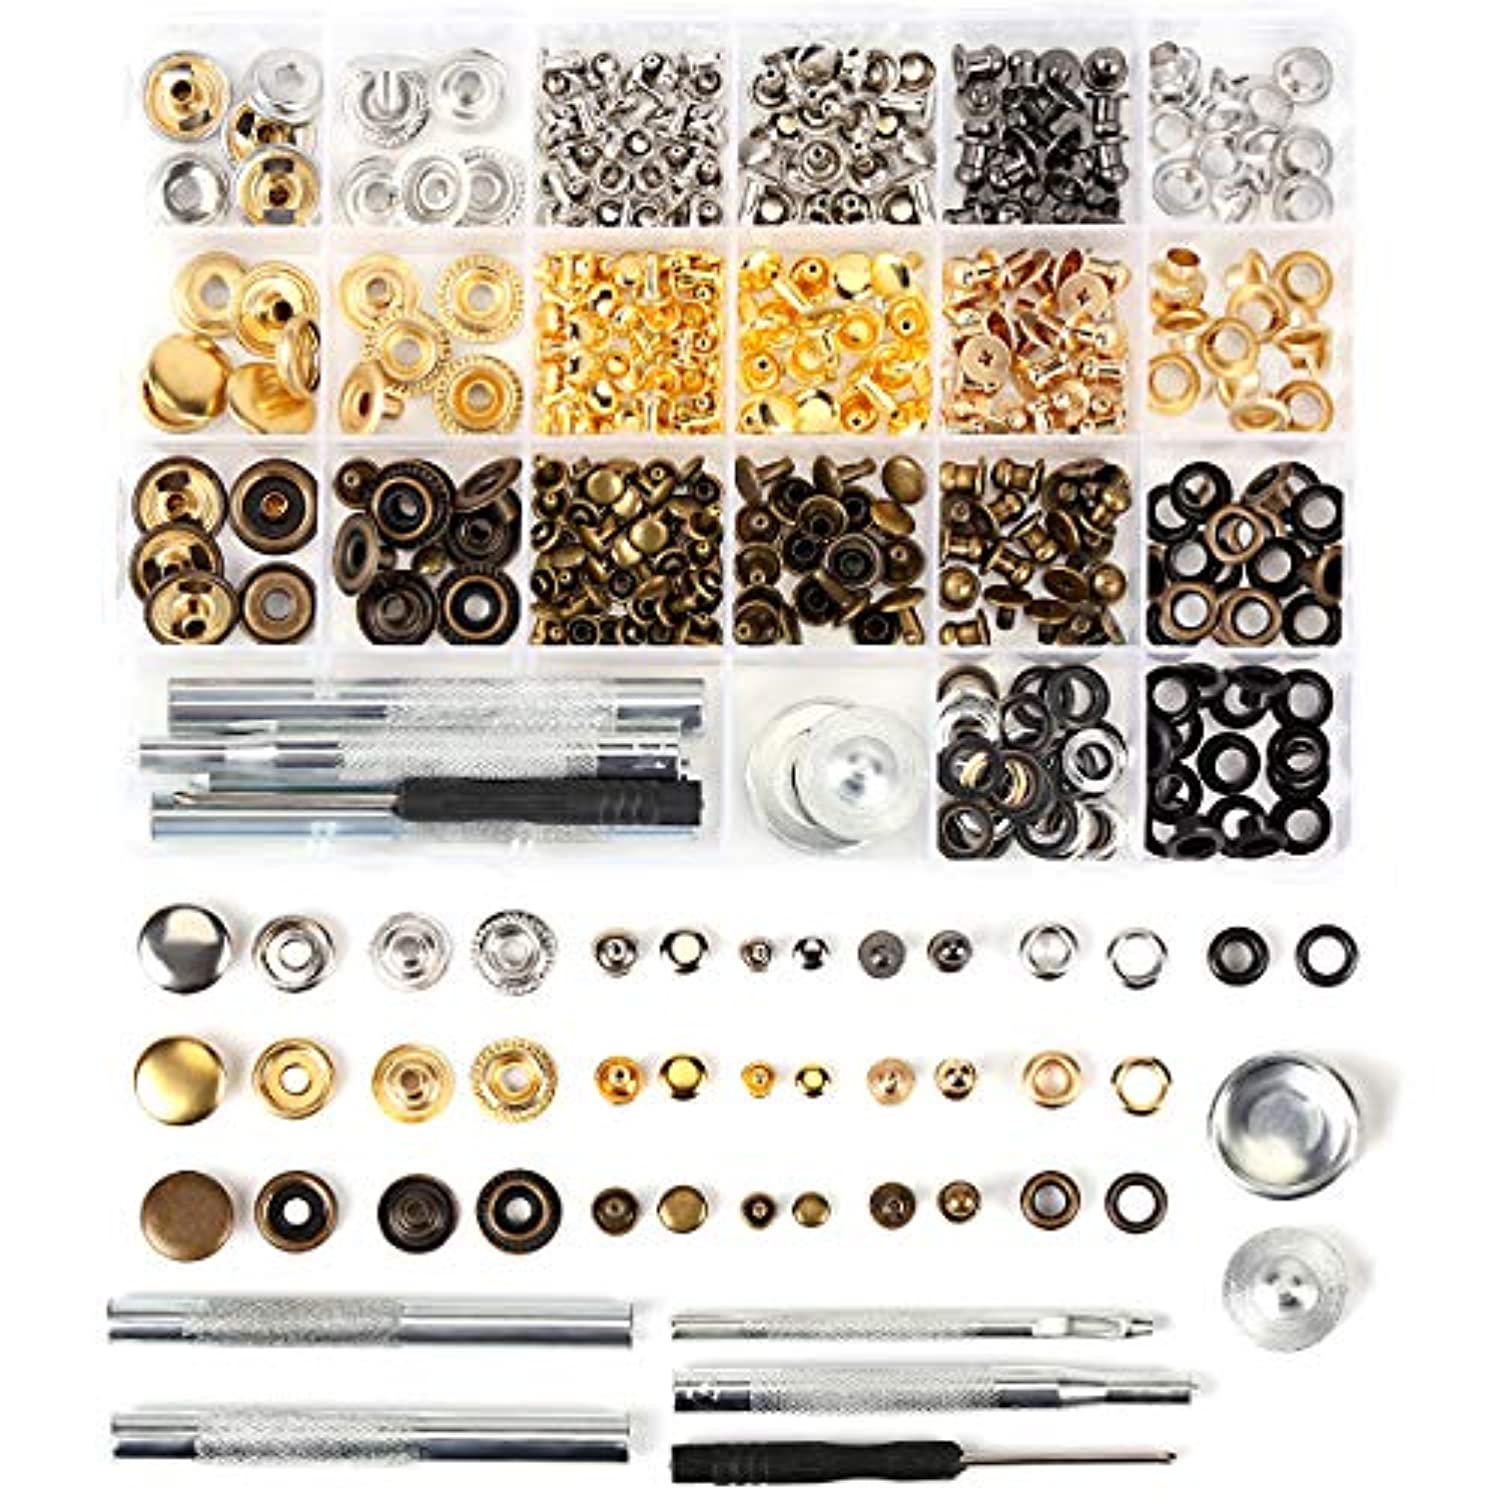 Kit de remaches de cuero 364 piezas 4 estilos de broches de metal  incluyendo kit de botones a presión, tornillos, botones de presión,  remaches para